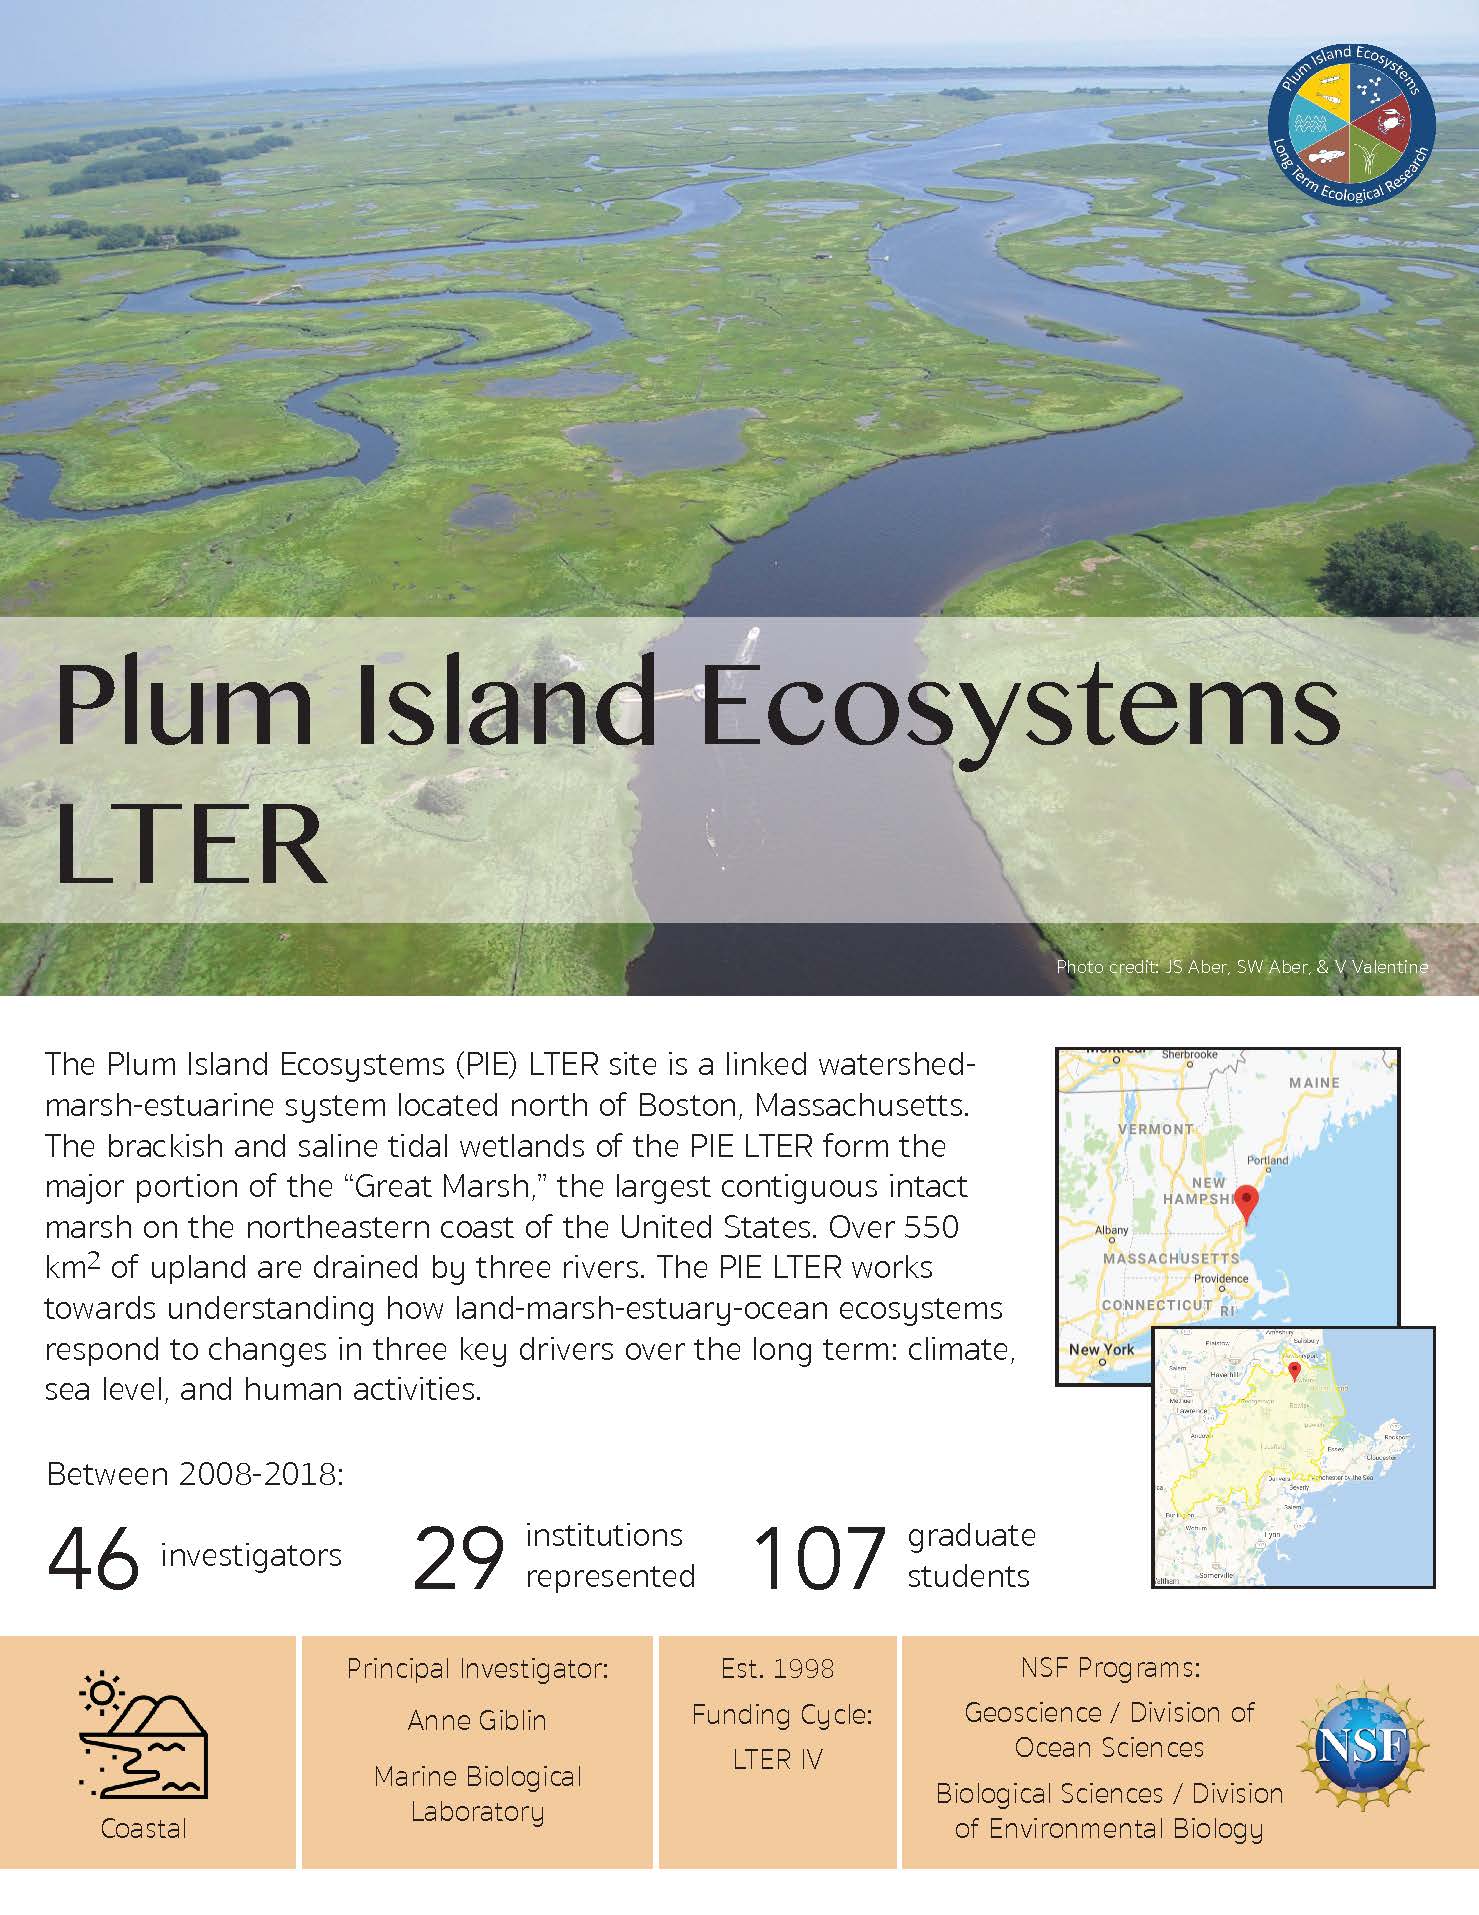 Plum Island Ecosystem LTER site brief